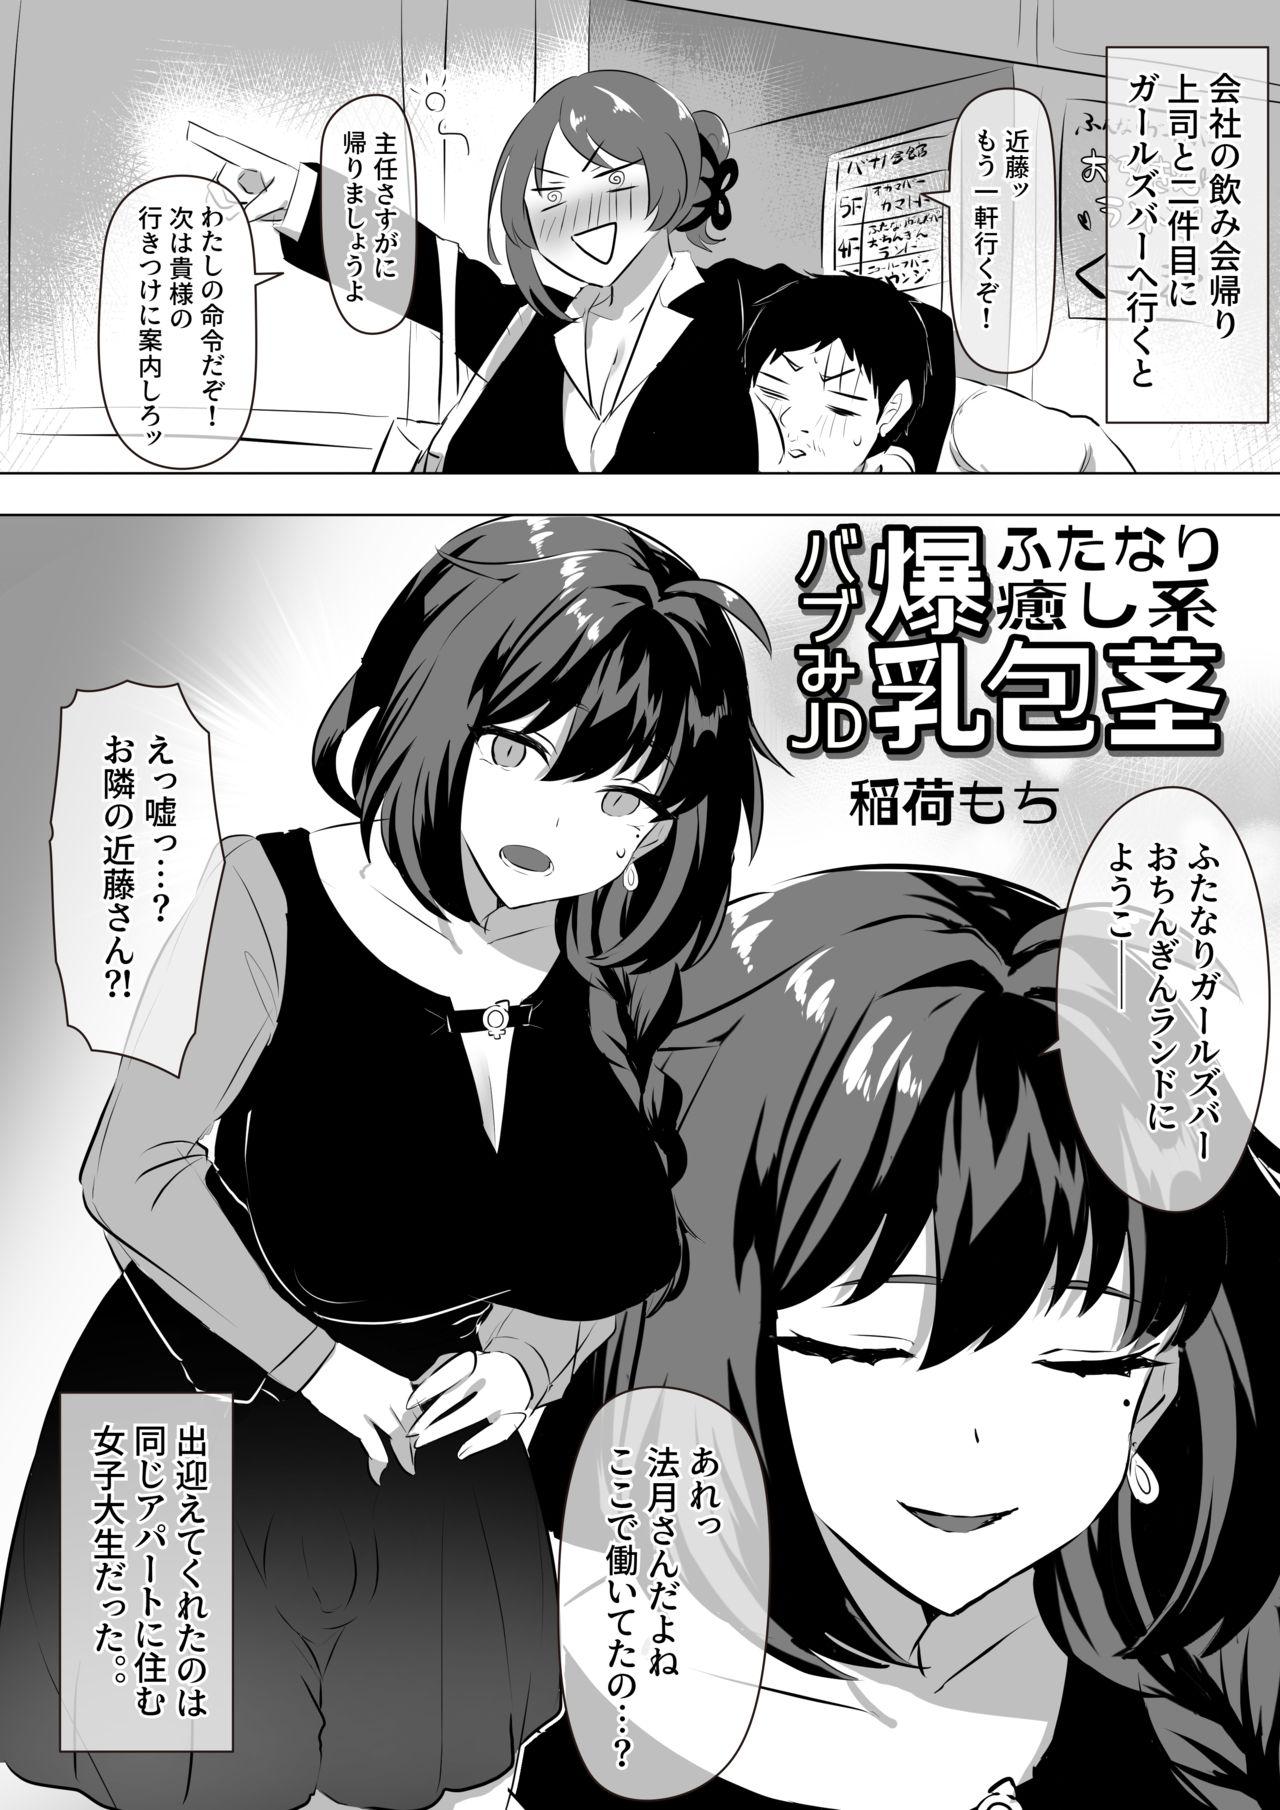 Futanari Iyashikei Bakunyū Hōkei Babu mi JD Manga 1